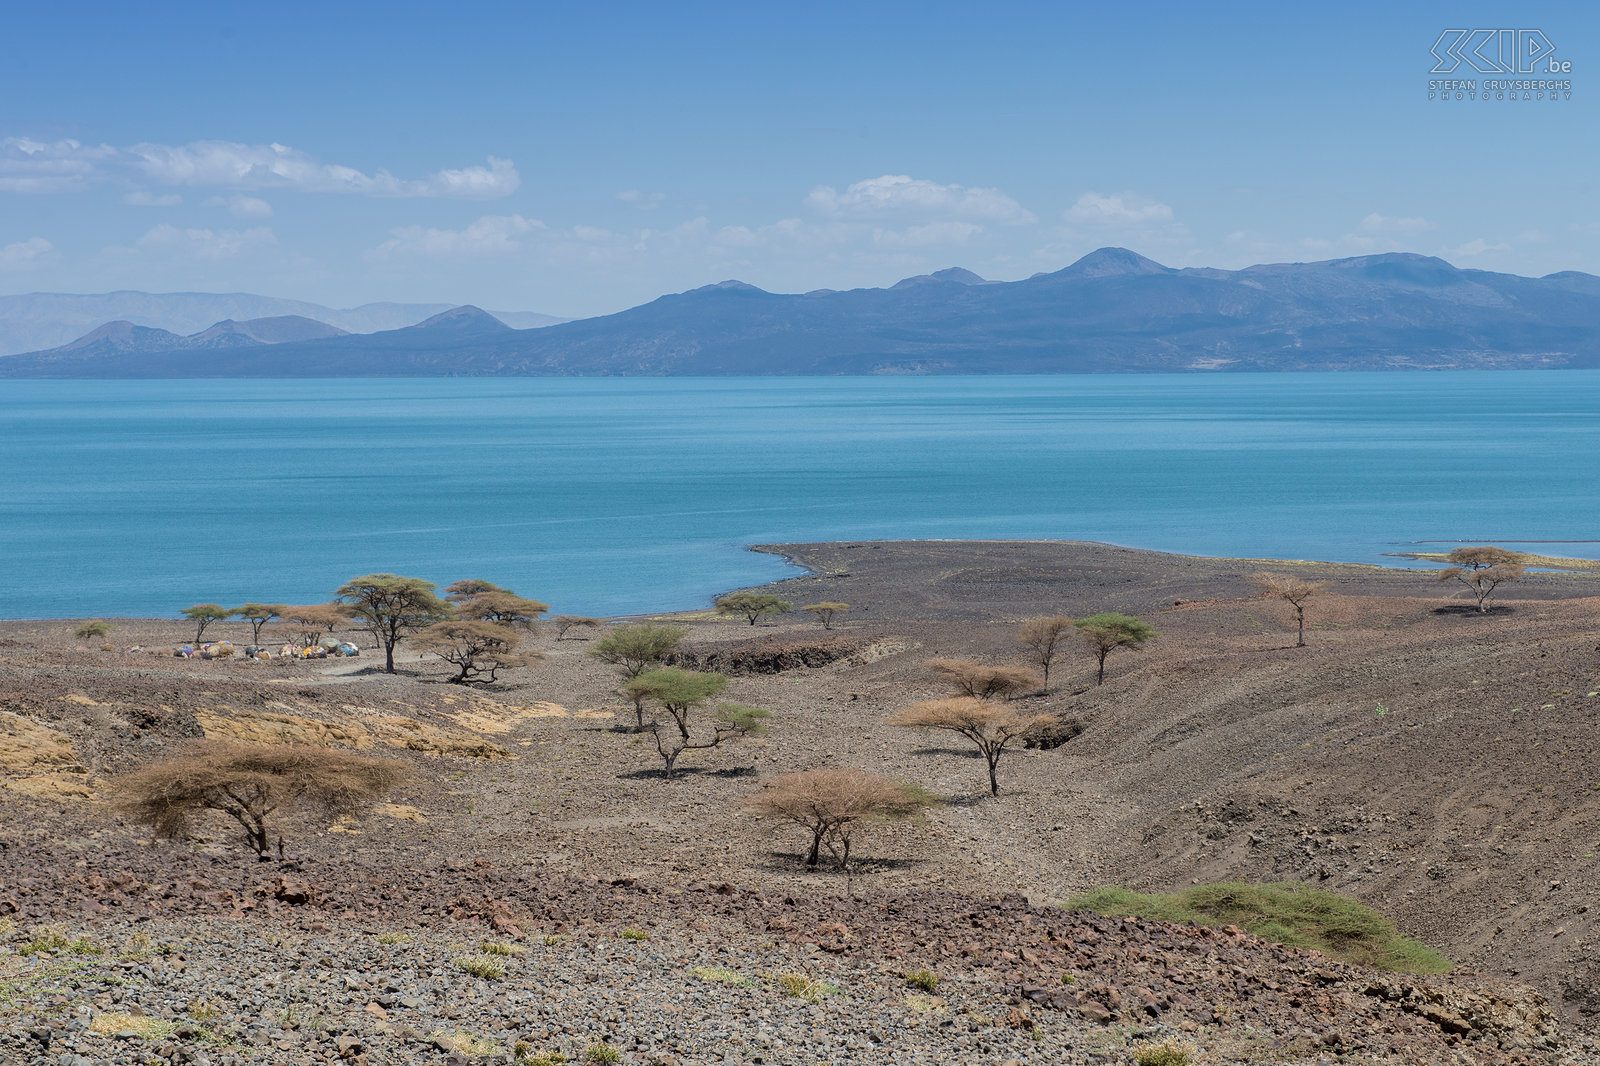 Lake Turkana Lake Turkana, voorheen bekend als Lake Rudolf, is gelegen in het noorden van Kenia. Het is 's werelds grootste alkaline meer. Het kleine stadje Loiyangalani ligt aan de zuidoostelijke kust van het meer. De regio wordt amper bezocht door toeristen. De temperatuur is er meestal hoog en het leven hard, maar de omgeving met vulkanische rotsen is er prachtig en er wonen nog boeiende authentieke stammen zoals de El Molo en Turkana. Loiyangalani was het decor voor John le Carre's roman 'The Constant Gardener' en het was ook de locatie voor de film. Stefan Cruysberghs